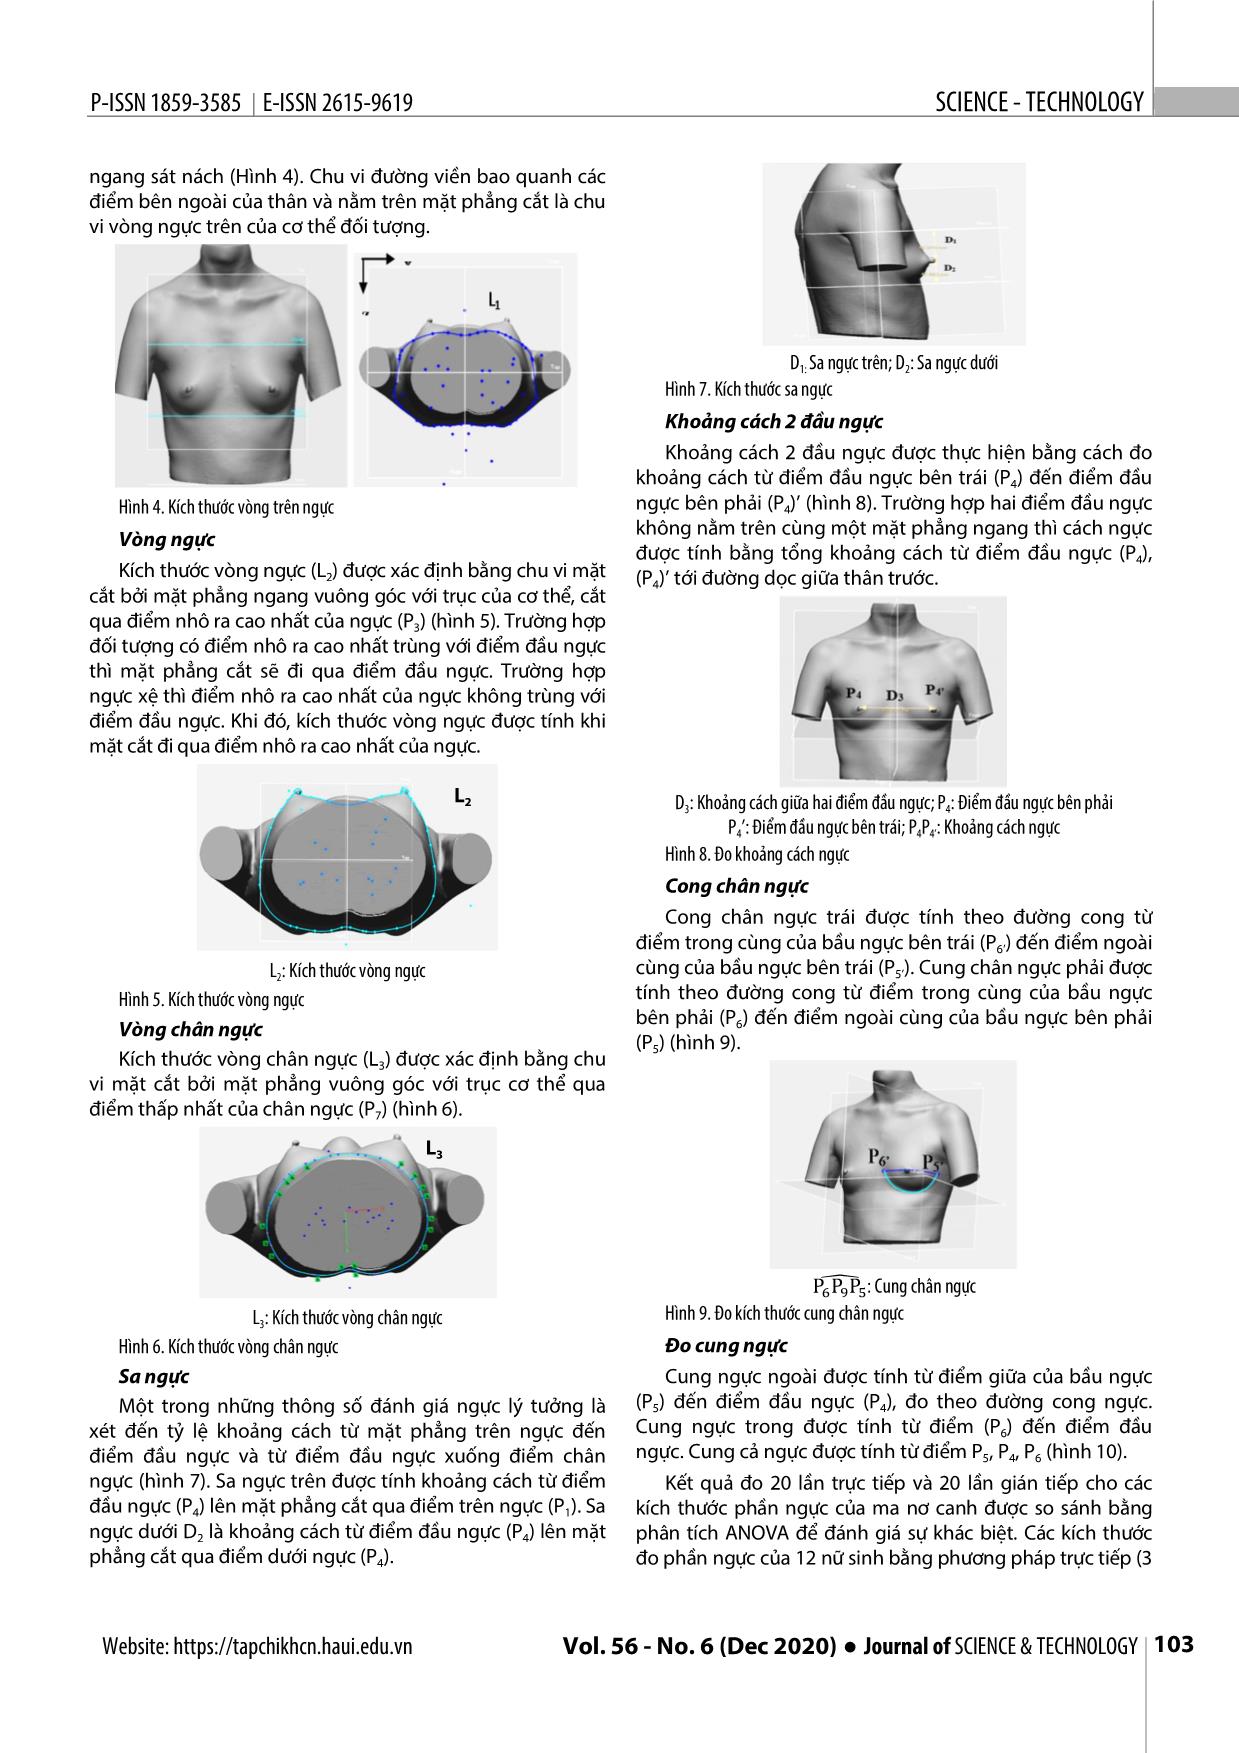 Nghiên cứu đo kích thước phần ngực nữ thanh niên ứng dụng công nghệ quét 3D trang 4